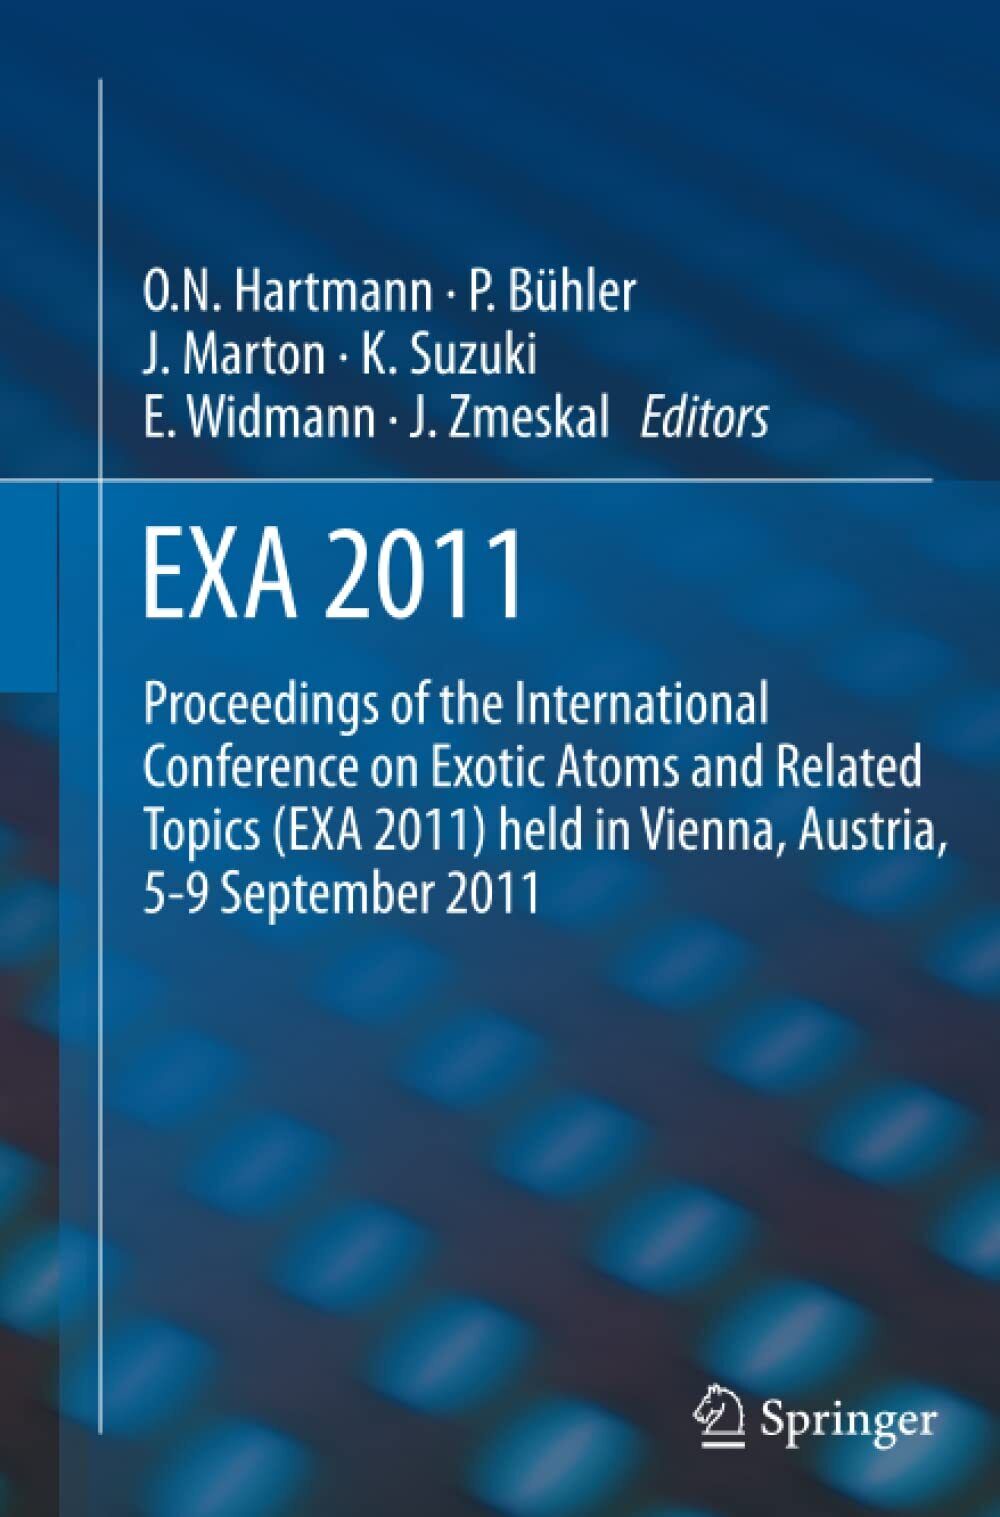 EXA 2011 - Paul B?hler - Springer, 2014